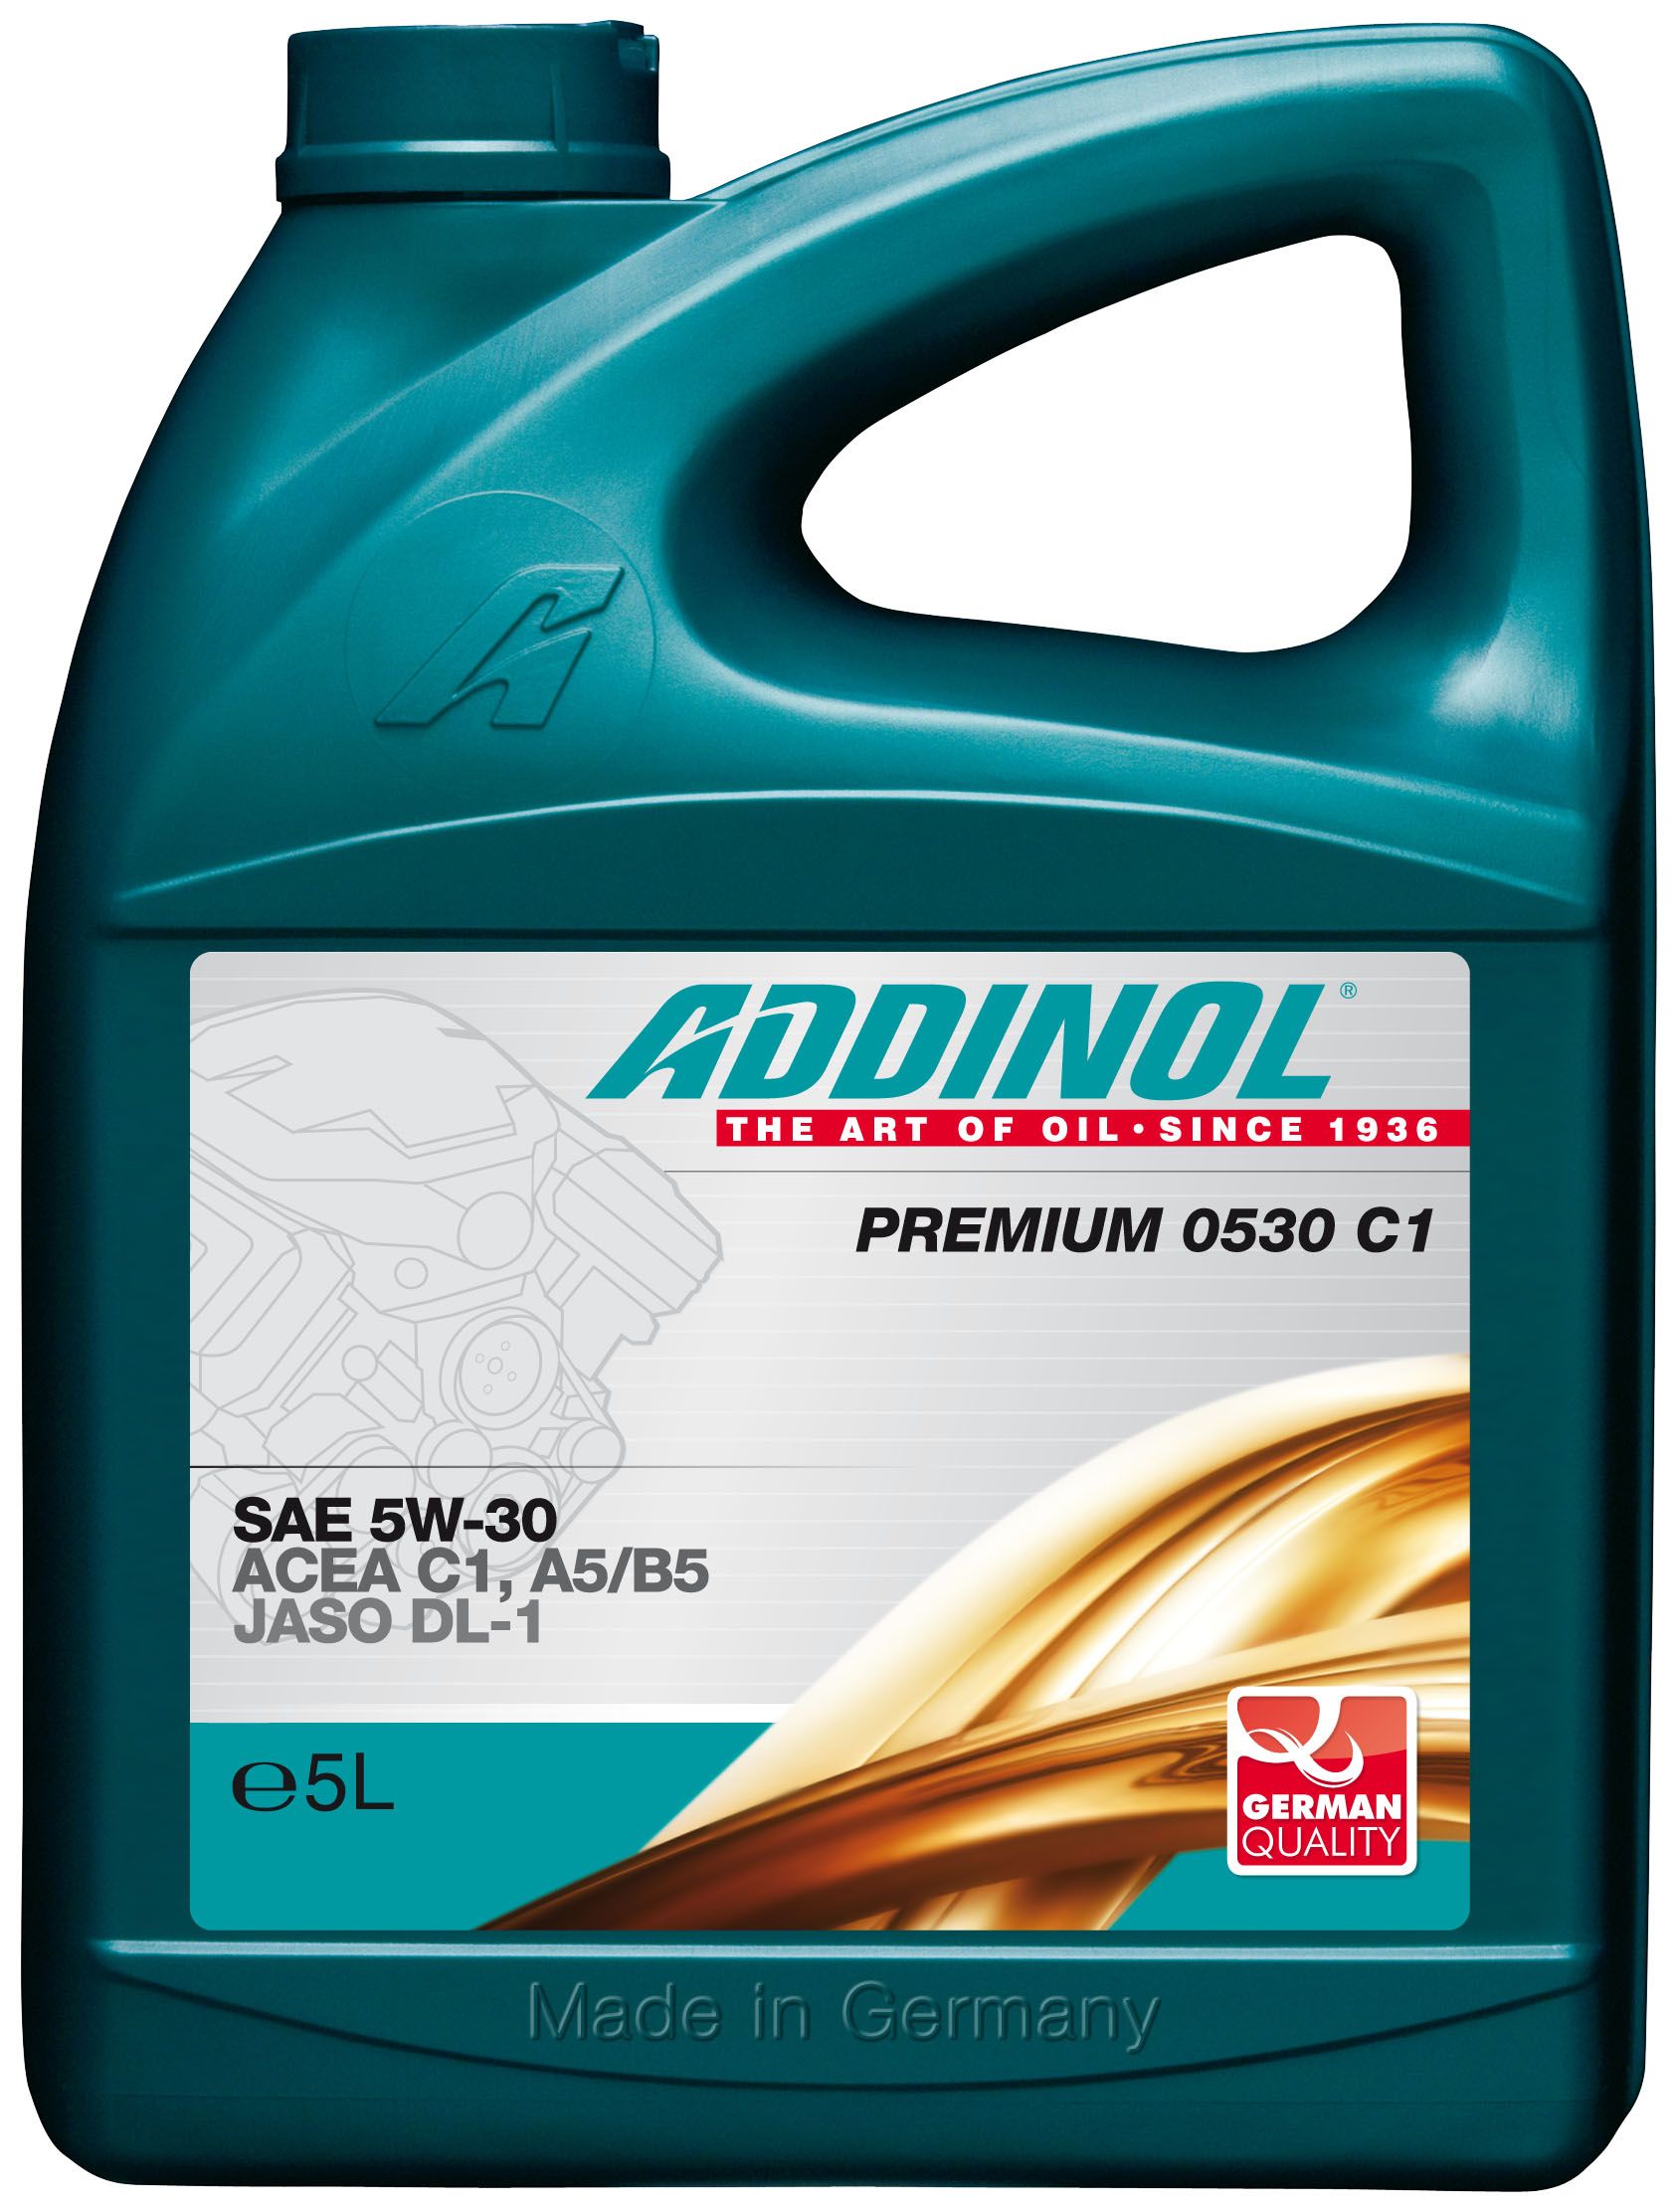 Моторное масло ярославль. Addinol 4014766241108 масло моторное синтетическое "Giga Light (Motorenol) MV 0530 ll 5w-30", 5л. Addinol Premium 0530 c3-DX 5w-30 5л. Addinol Diesel Longlife MD 1548 (SAE 15w-40). Addinol Semi Synth 1040.